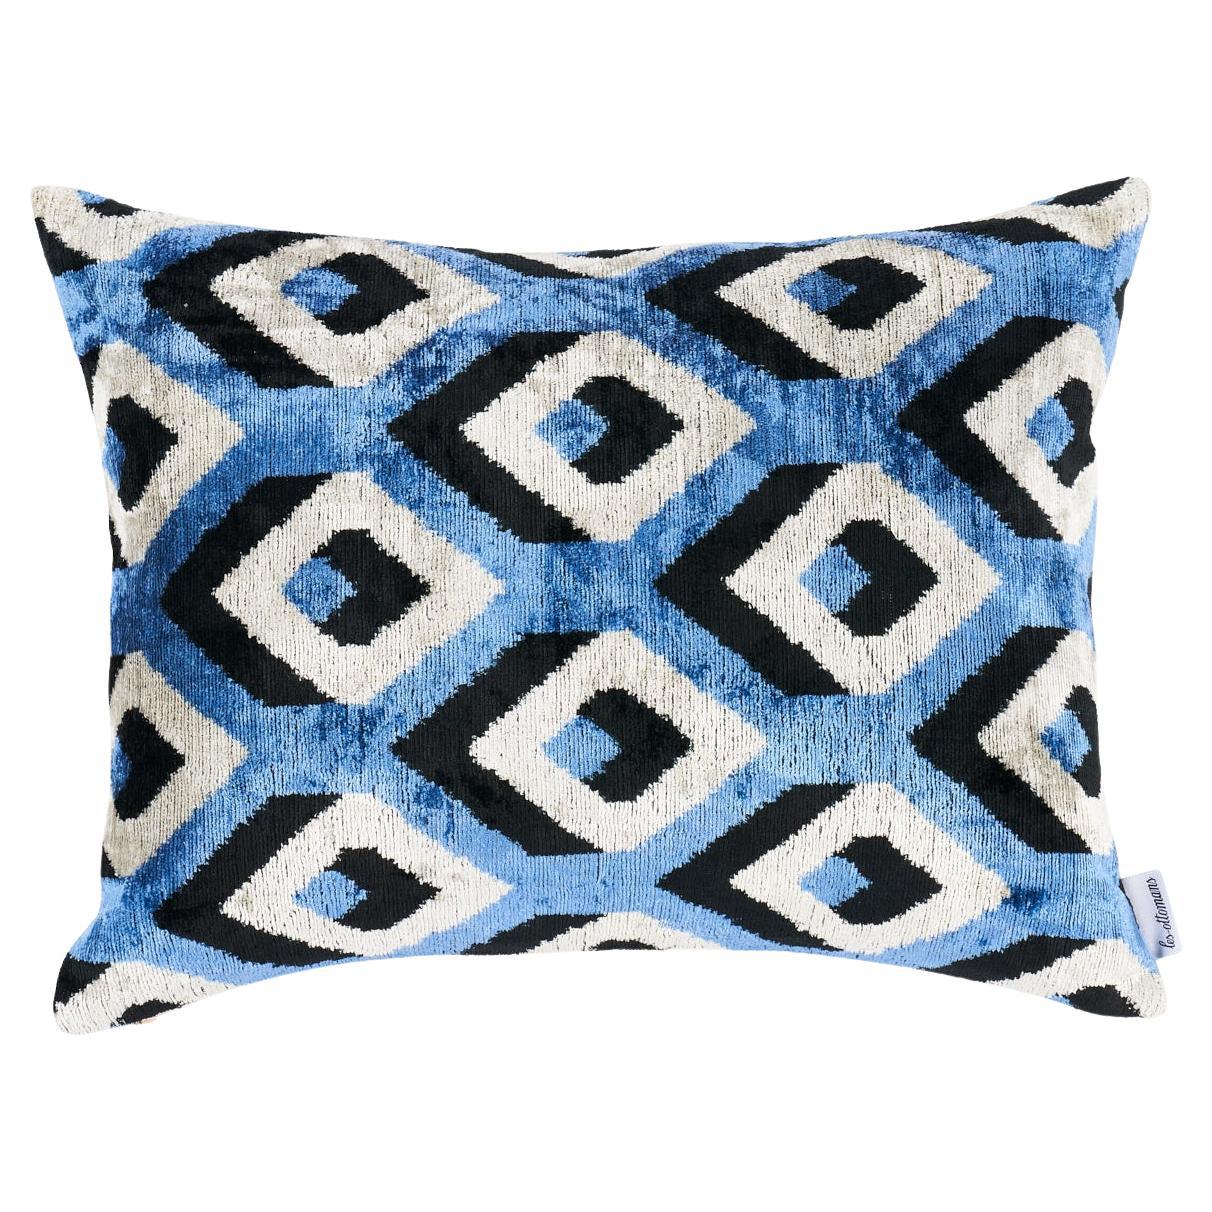 Schumacher Mersin Silk Velvet in Blue & Black 20" x 16" Pillow For Sale